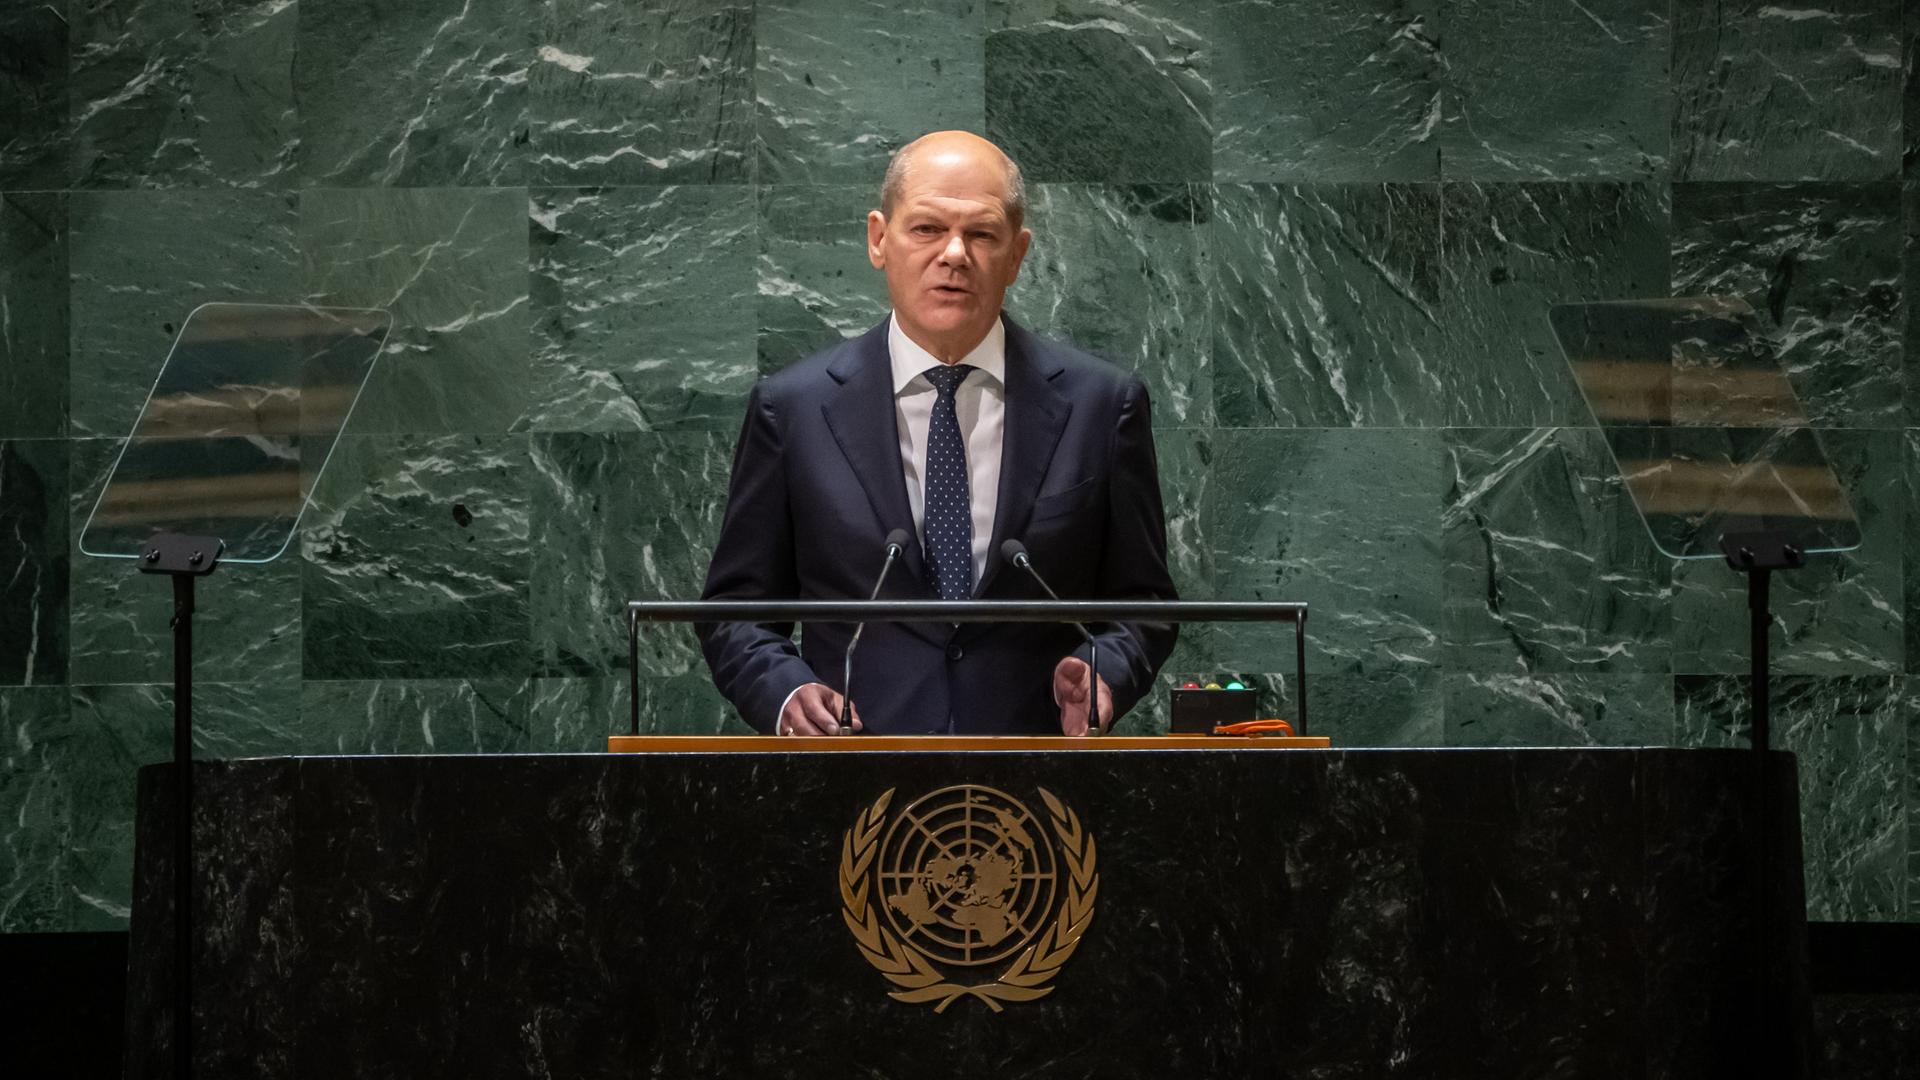 Bundeskanzler Olaf Scholz steht im Plenum der UNO-Vollversammlung am Redepult, im Hintergrund schimmert die für den Ort typische grünliche Wand.